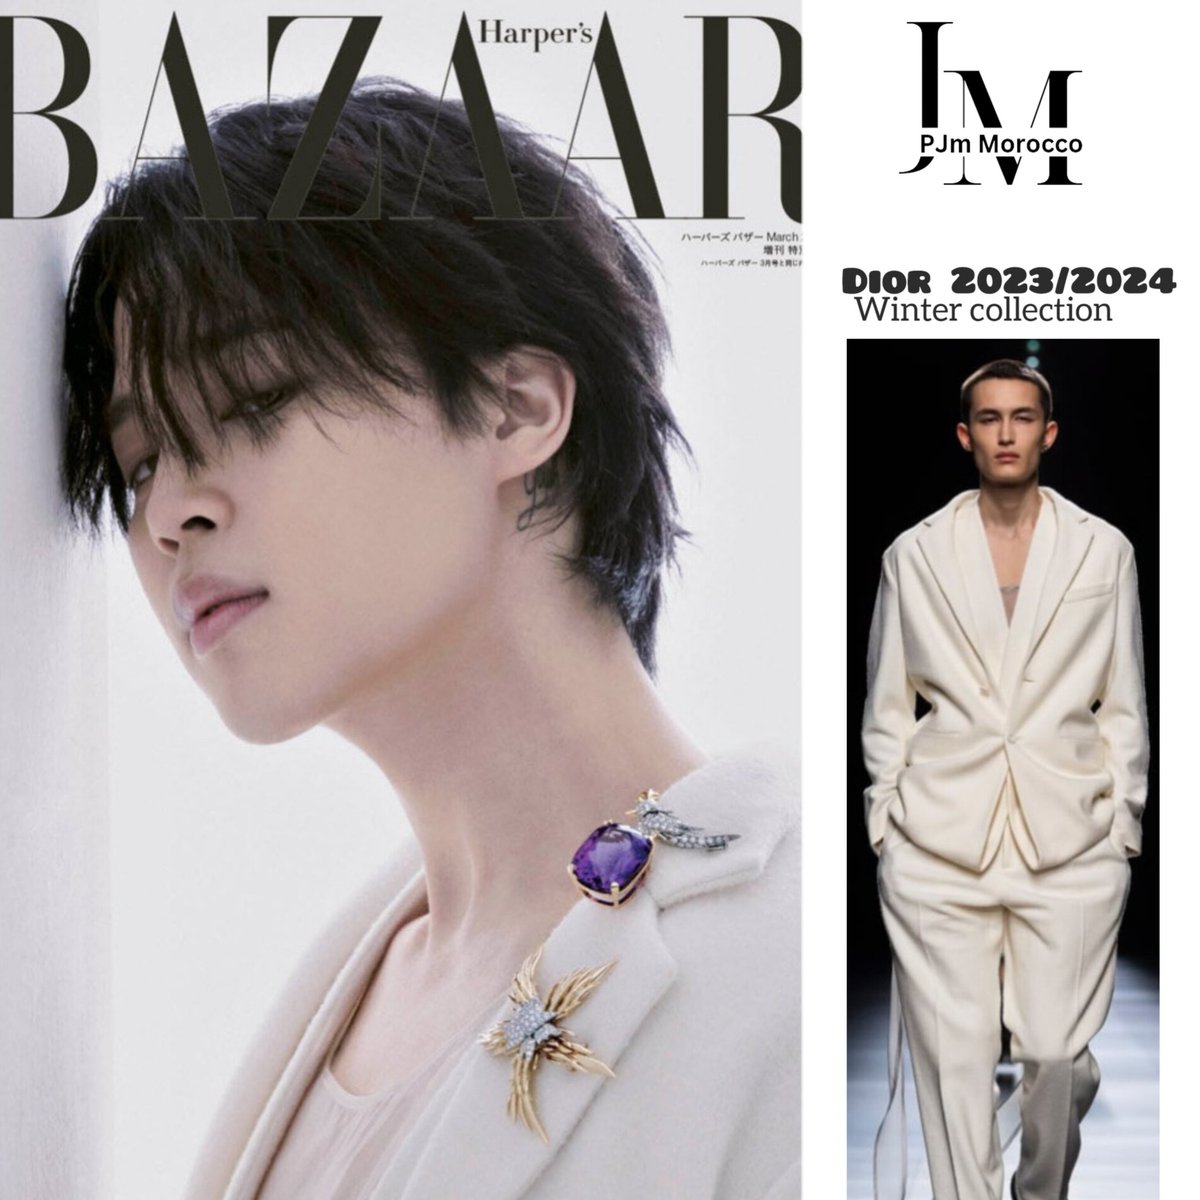 Jimin for Harper's Bazaar Japan March 2024 issue 
#JIMIN #JiminJewelryBox #JiminxTiffanyAndCo #JiminxHarpersBazaarJapan
#JIMINXDIOR